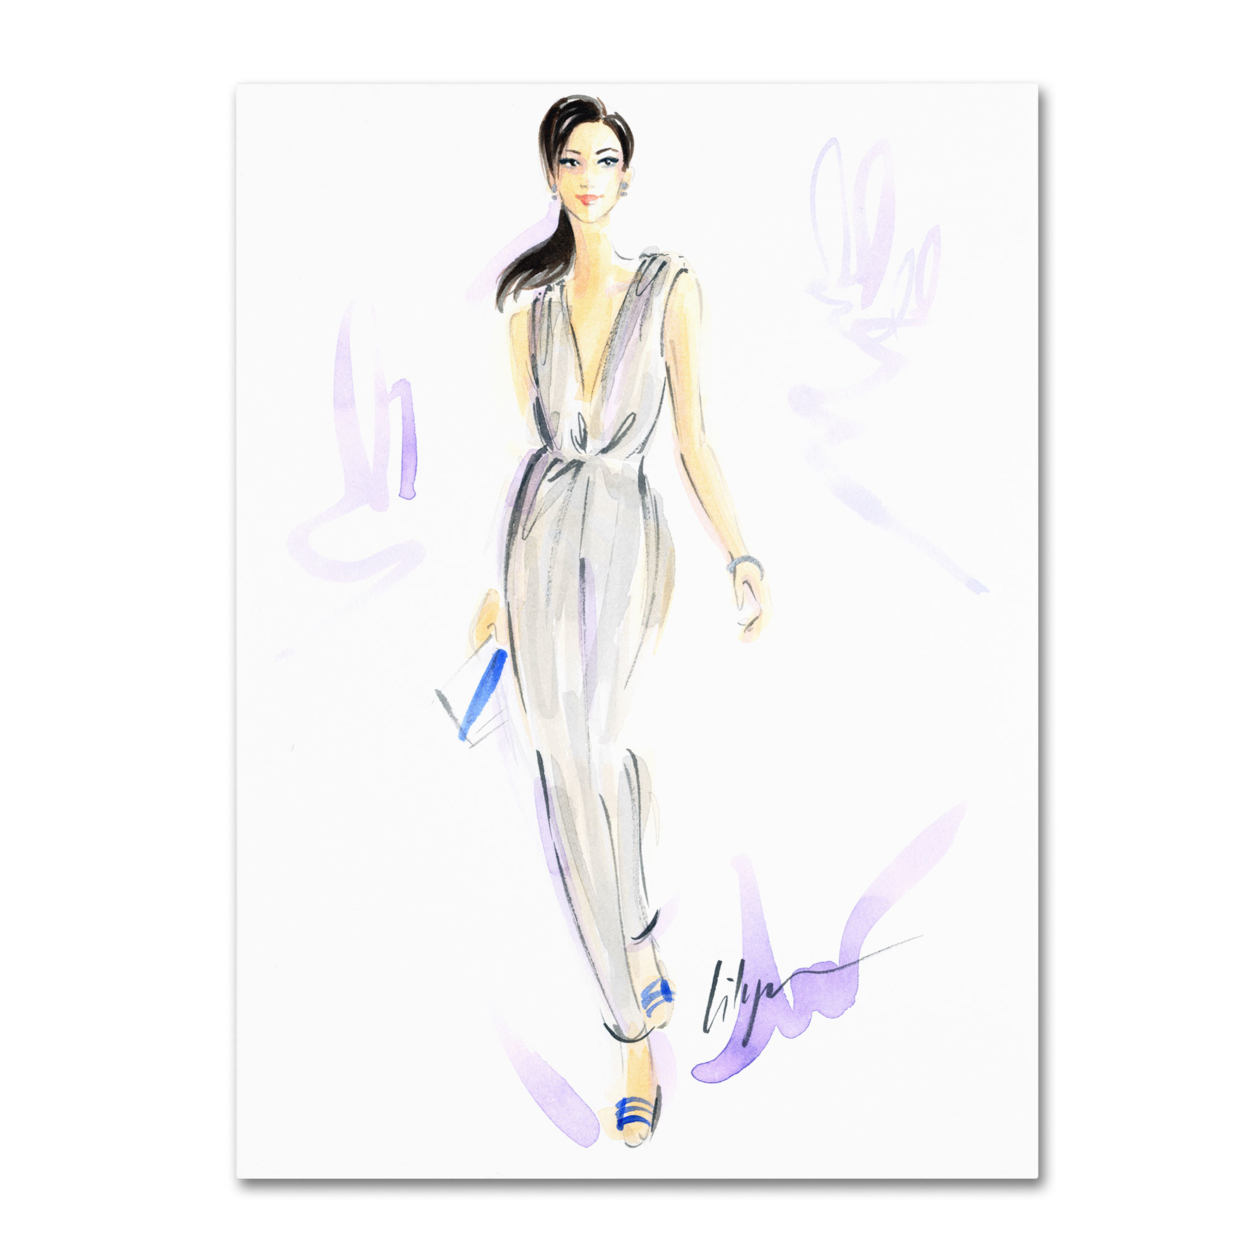 Jennifer Lilya 'Silver Wear' Canvas Wall Art 35 X 47 Inches